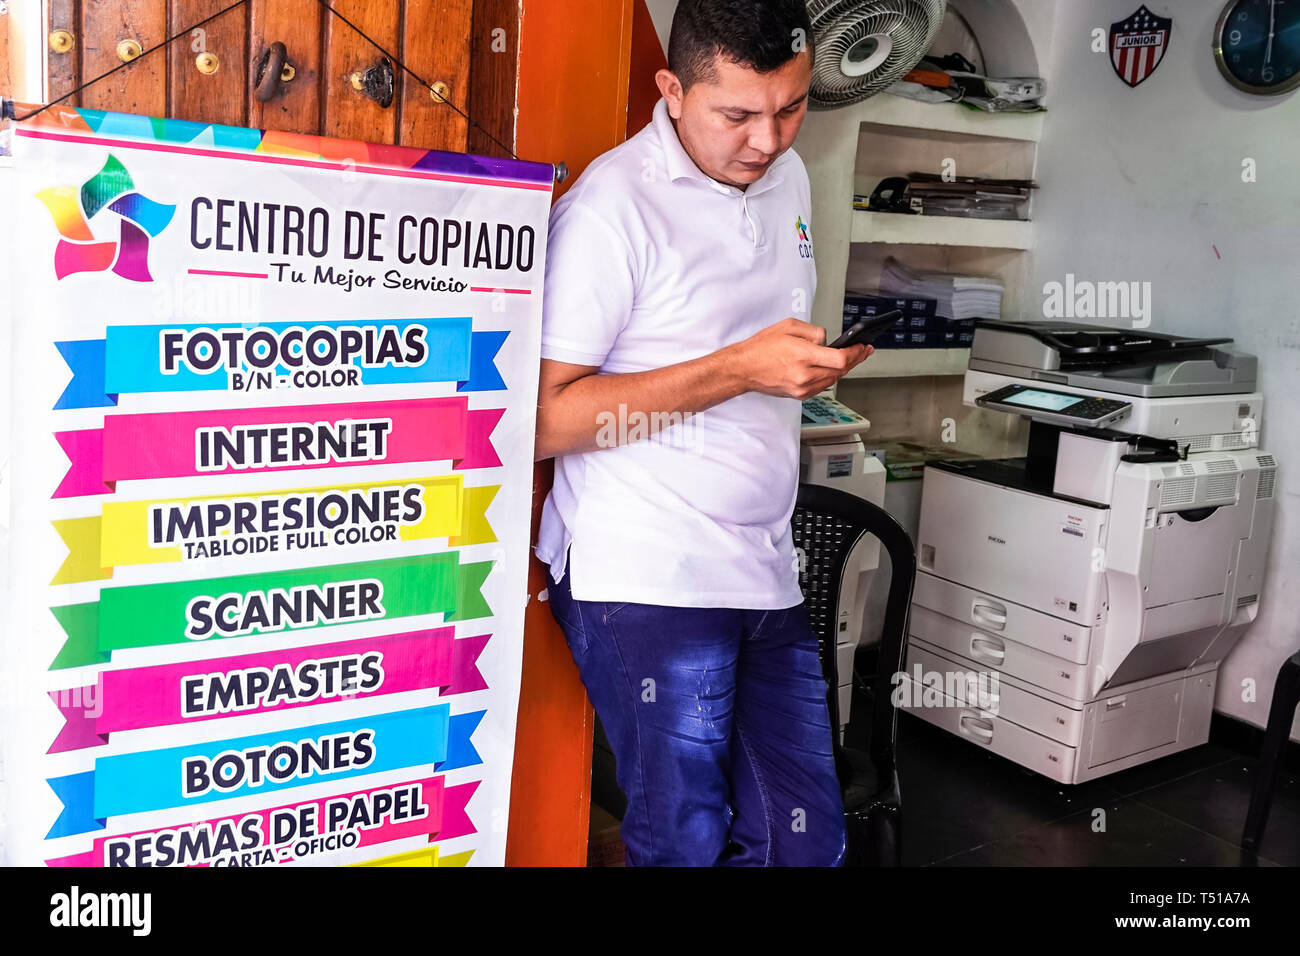 Cartagena Colombie,imprimerie photocopieuse,panneau,langue espagnole,résidents hispaniques,homme hommes,centre de copie,COL190123086 Banque D'Images